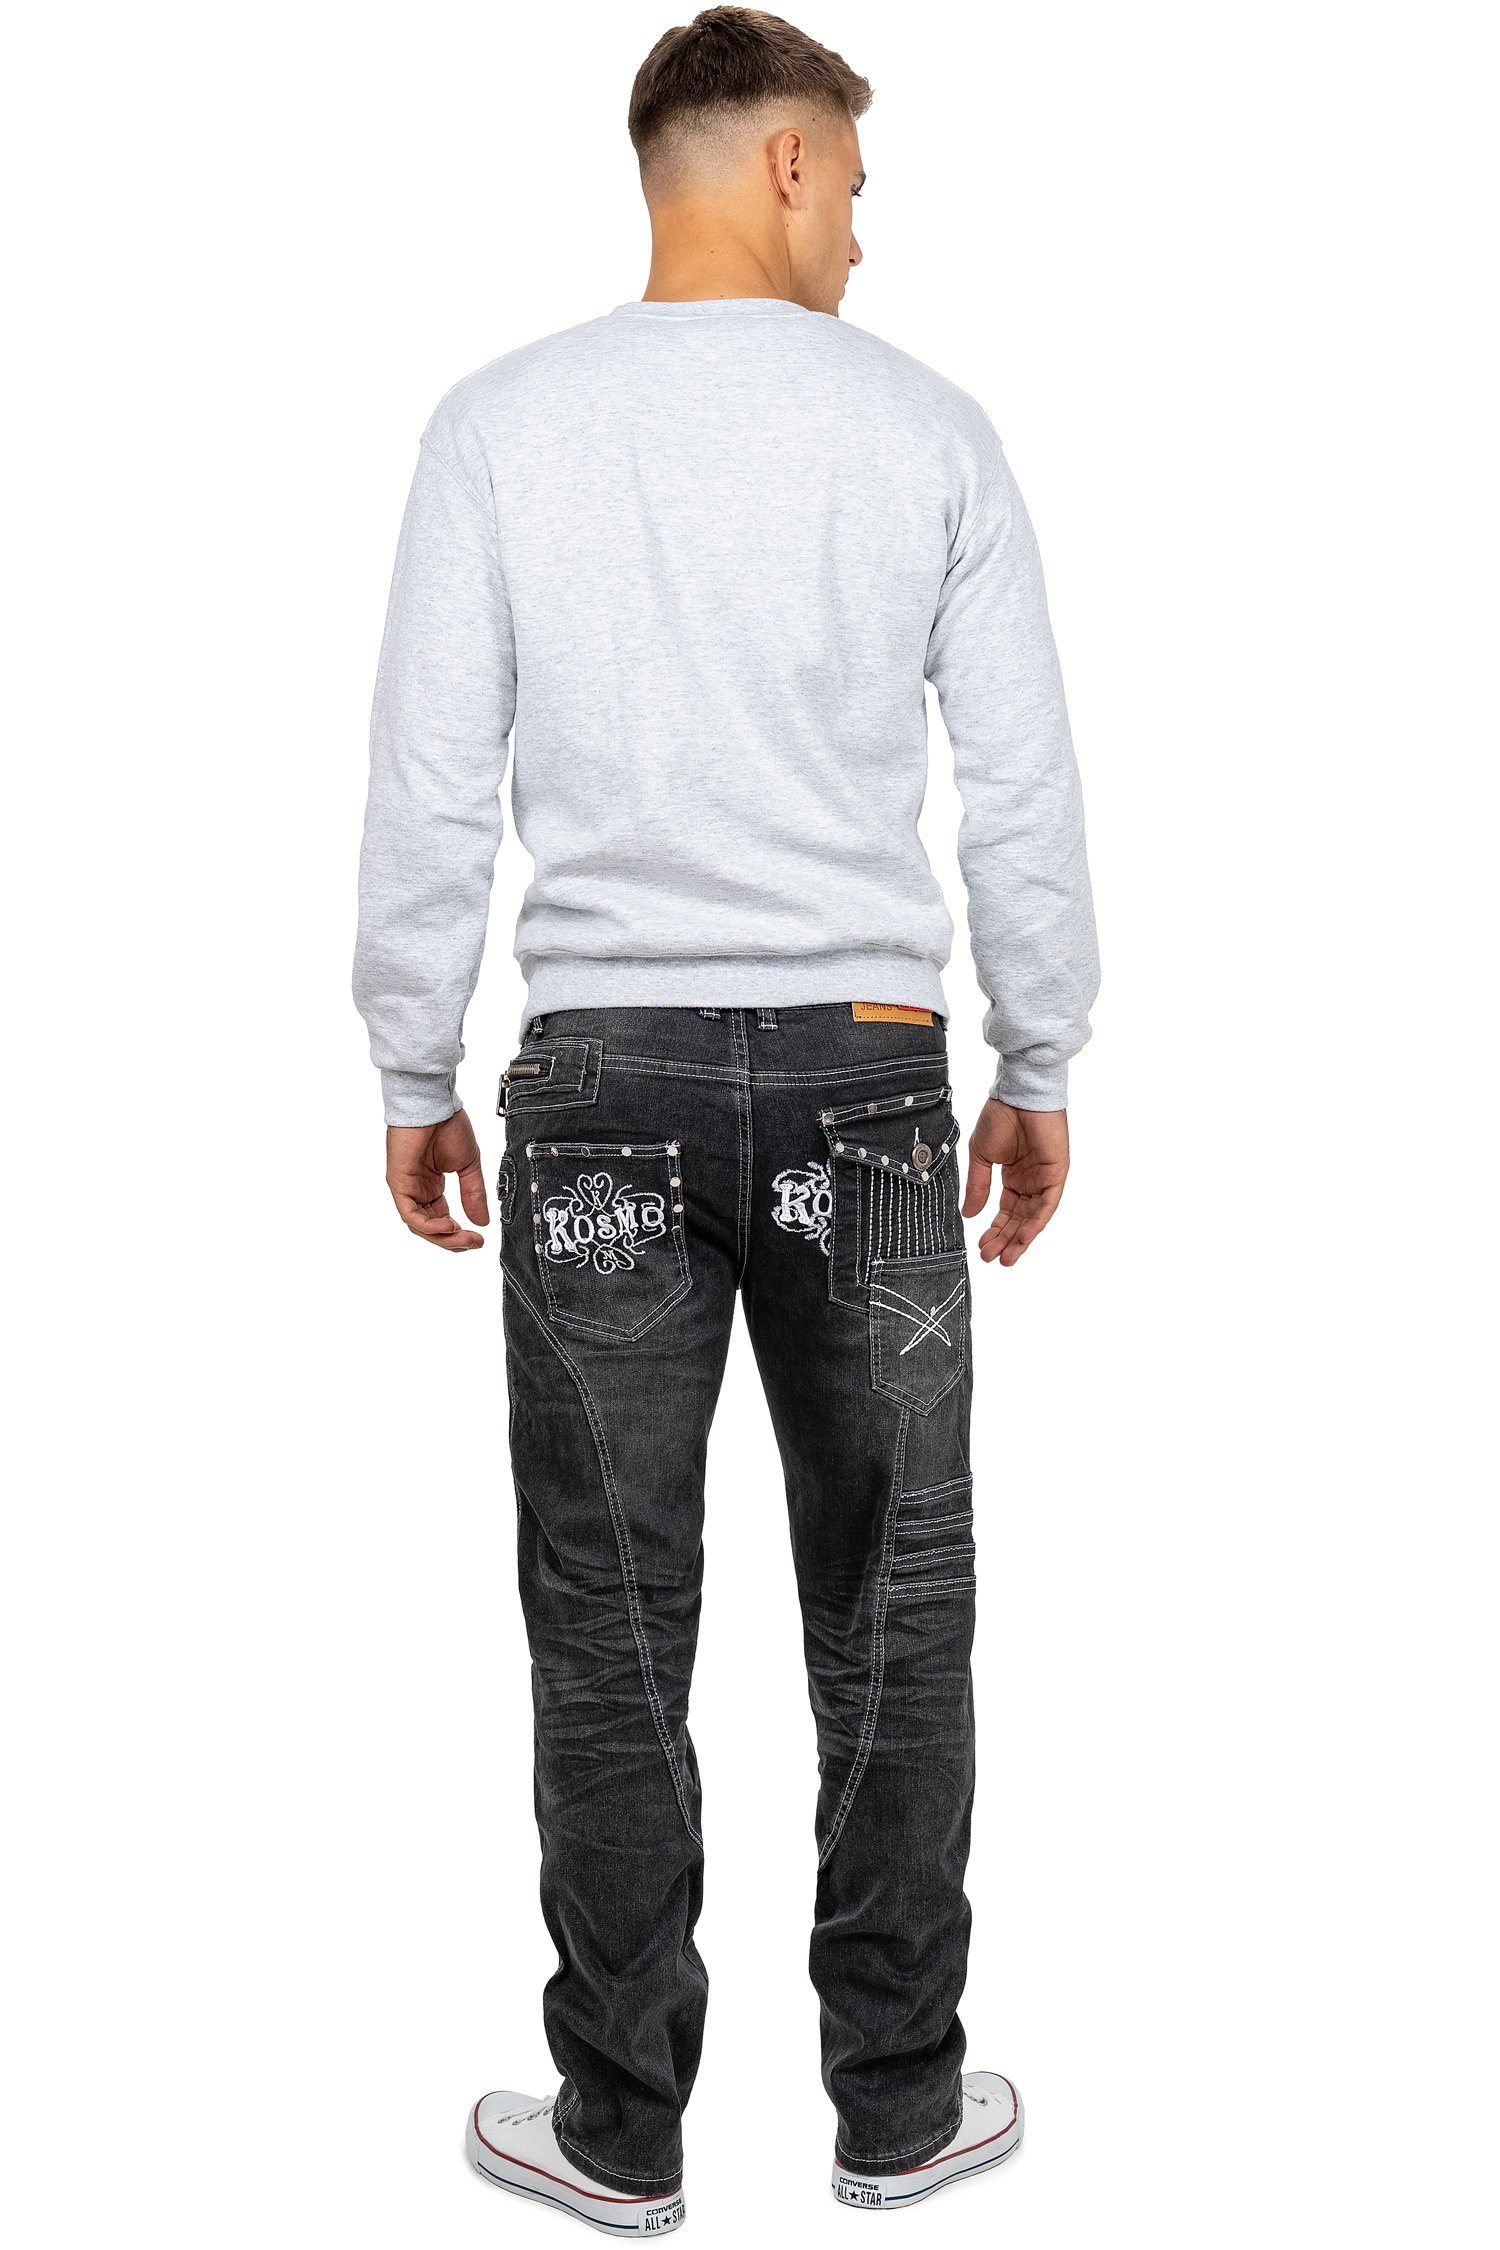 Kosmo Lupo grau Waschnung Hose Markante BA-KM051 und Herren Verzierungen Auffällige 5-Pocket-Jeans